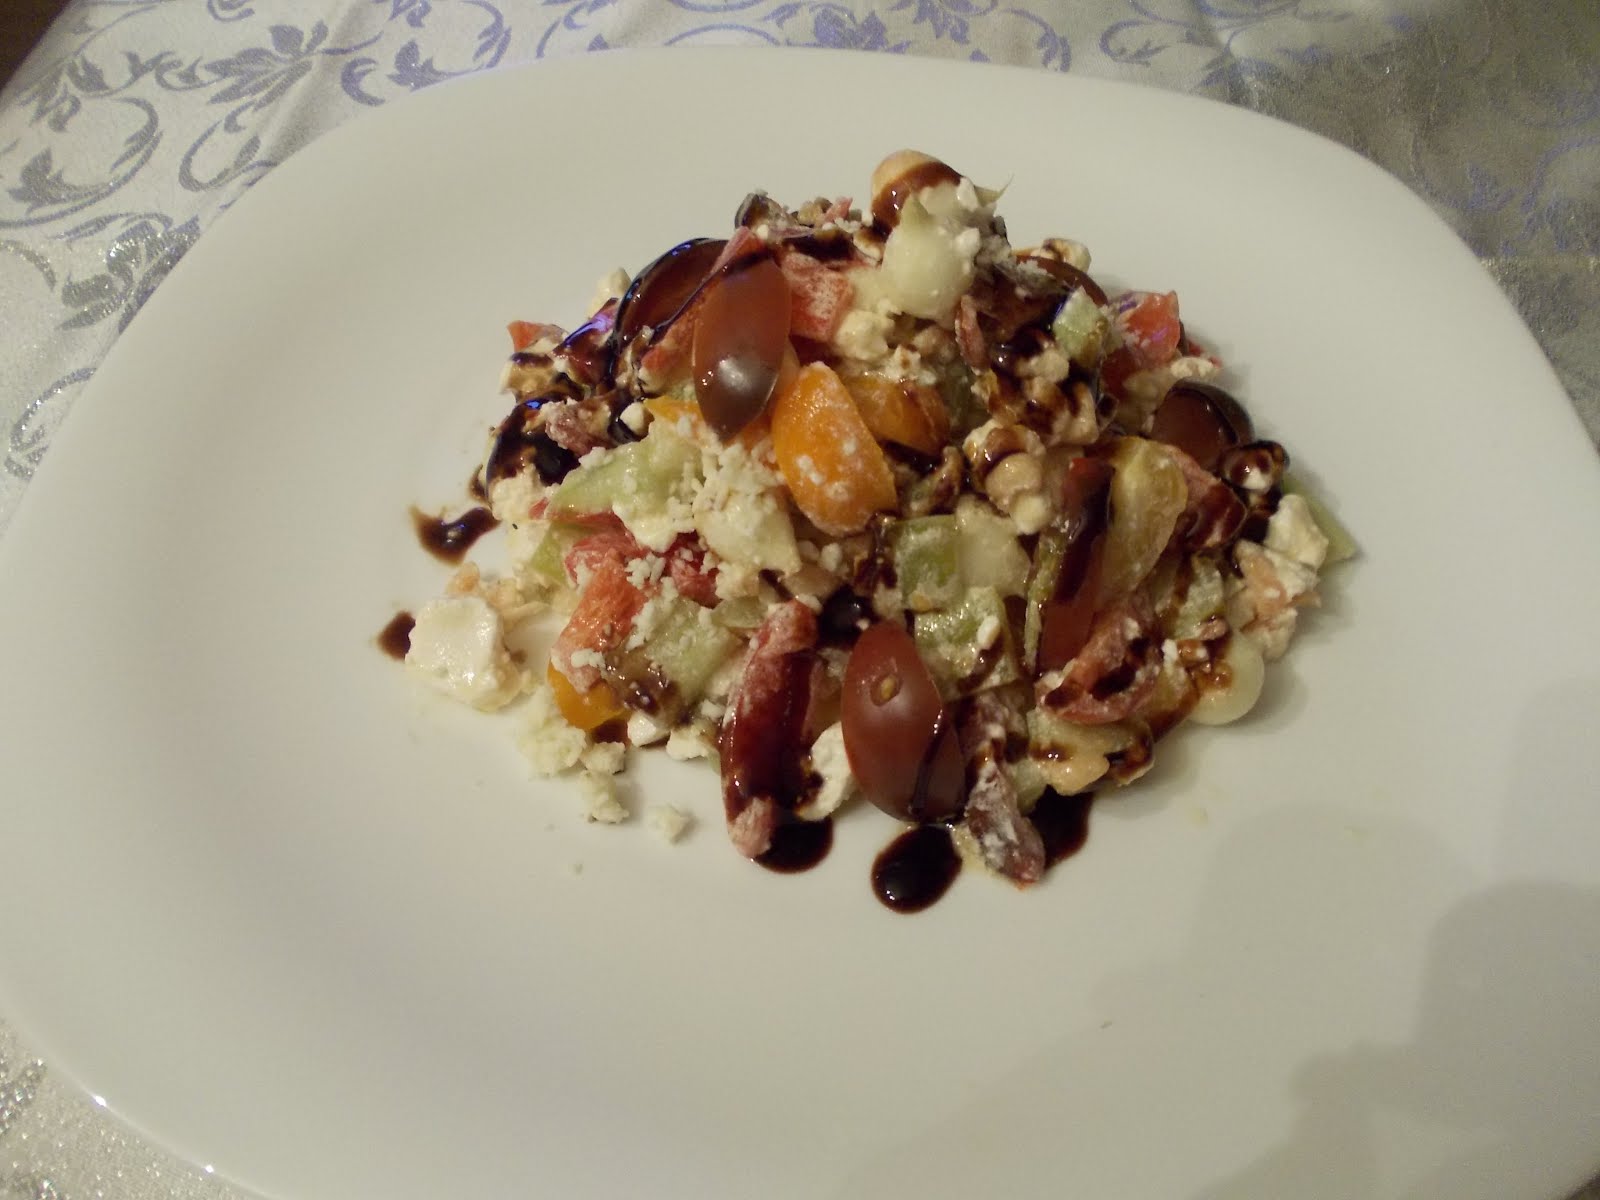 Salata 4mix cherry tomatoes Quattro stagioni